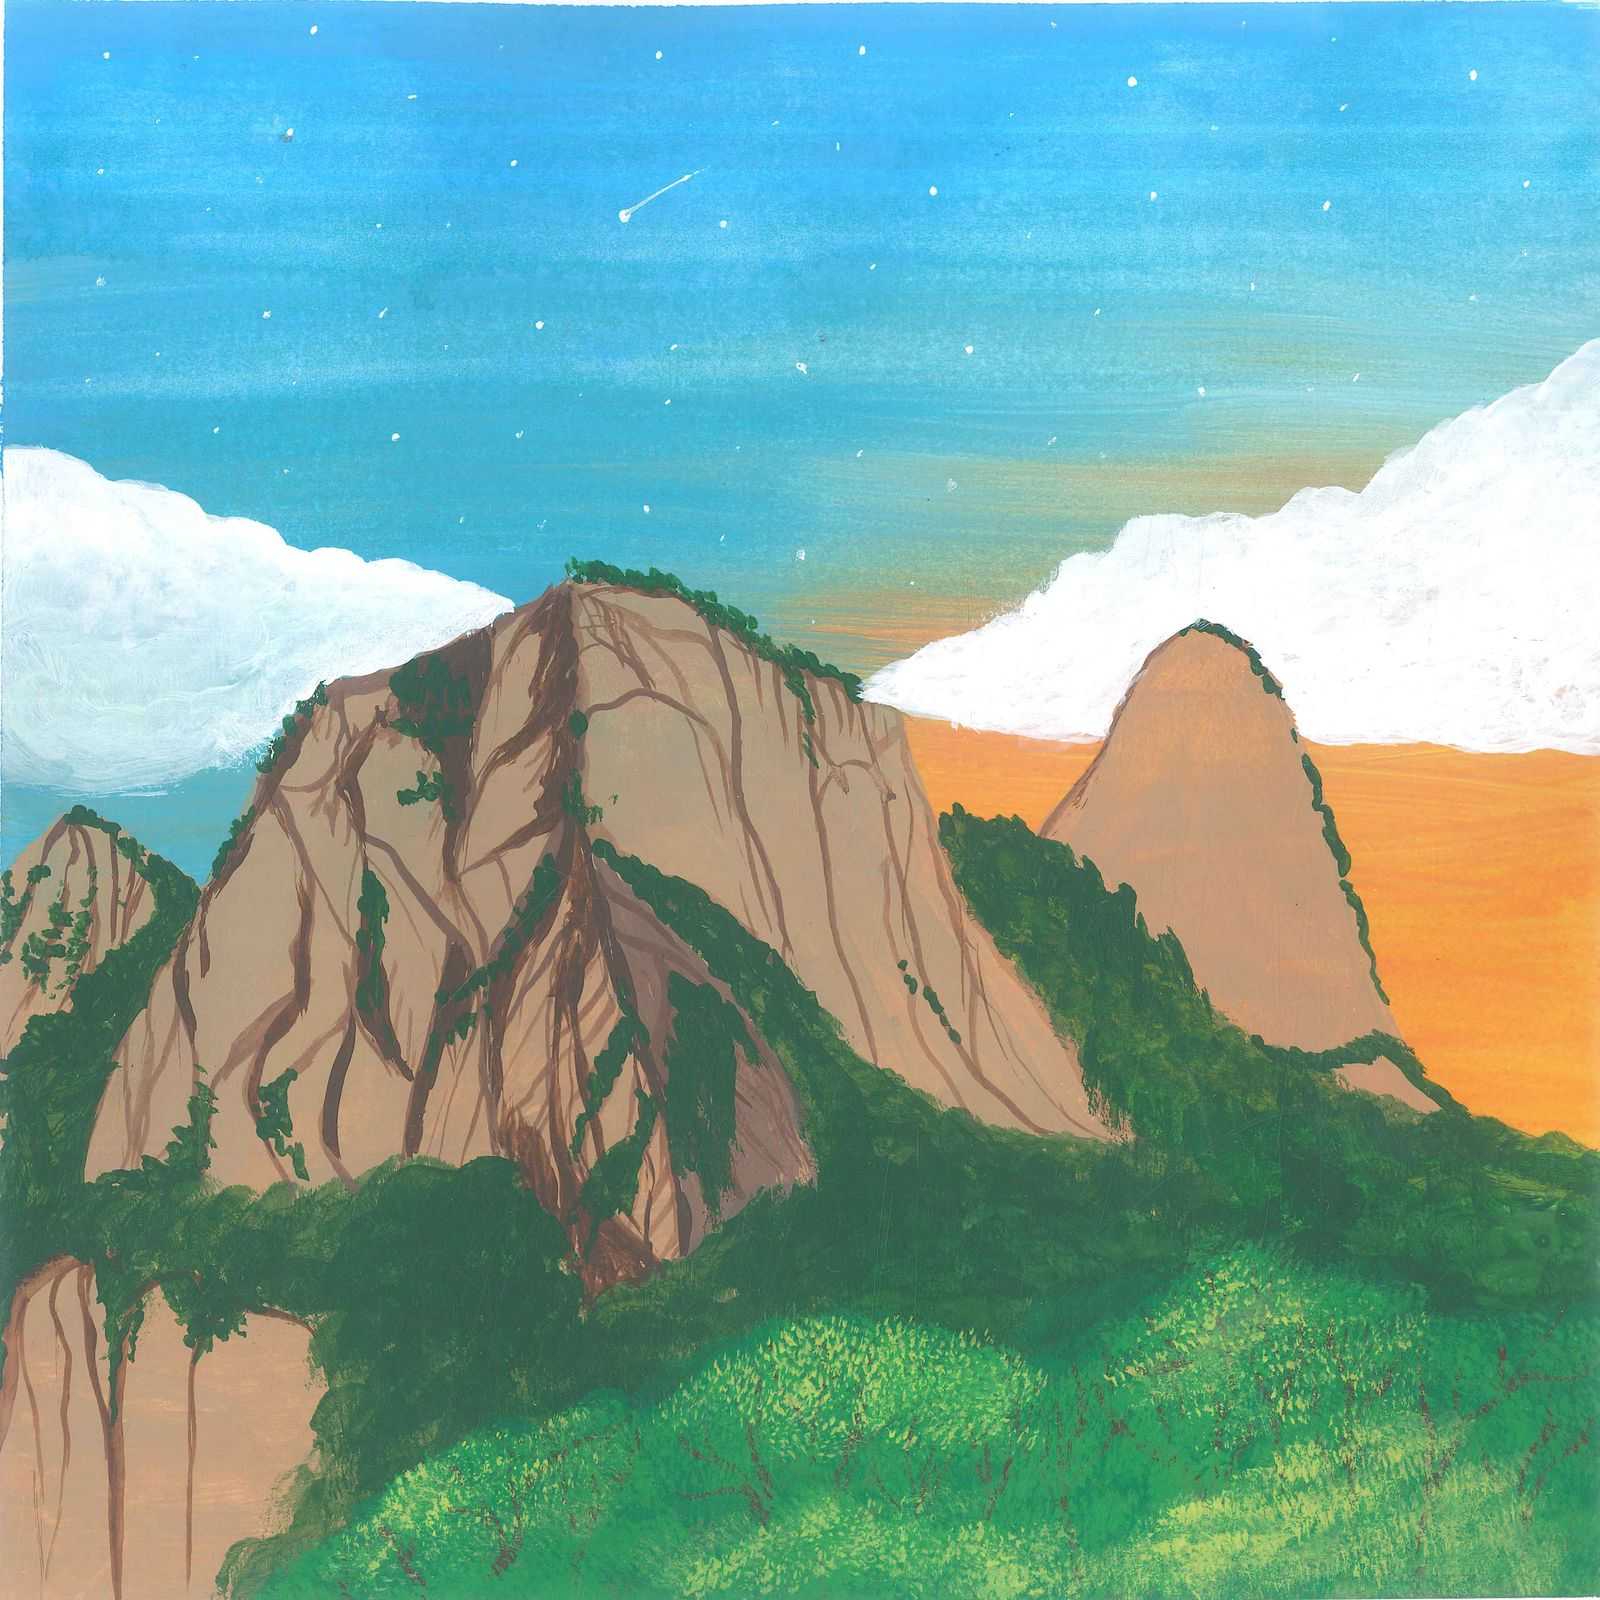 Serra dos Órgãos Soundscape - nature landscape painting - earth.fm